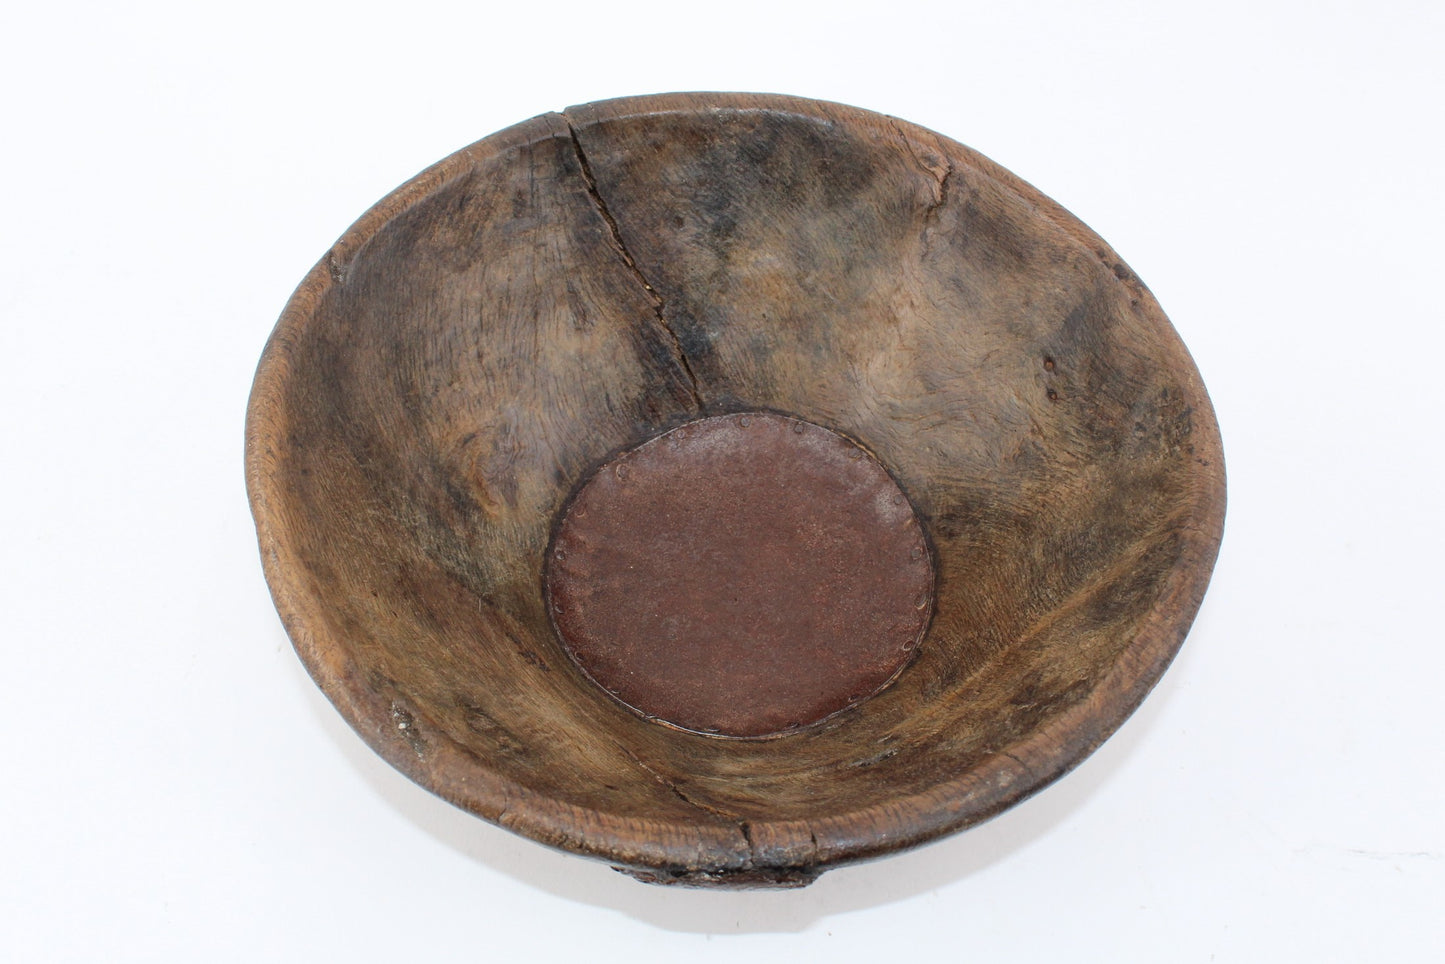 Antique Wooden Bowl with Original Repairs